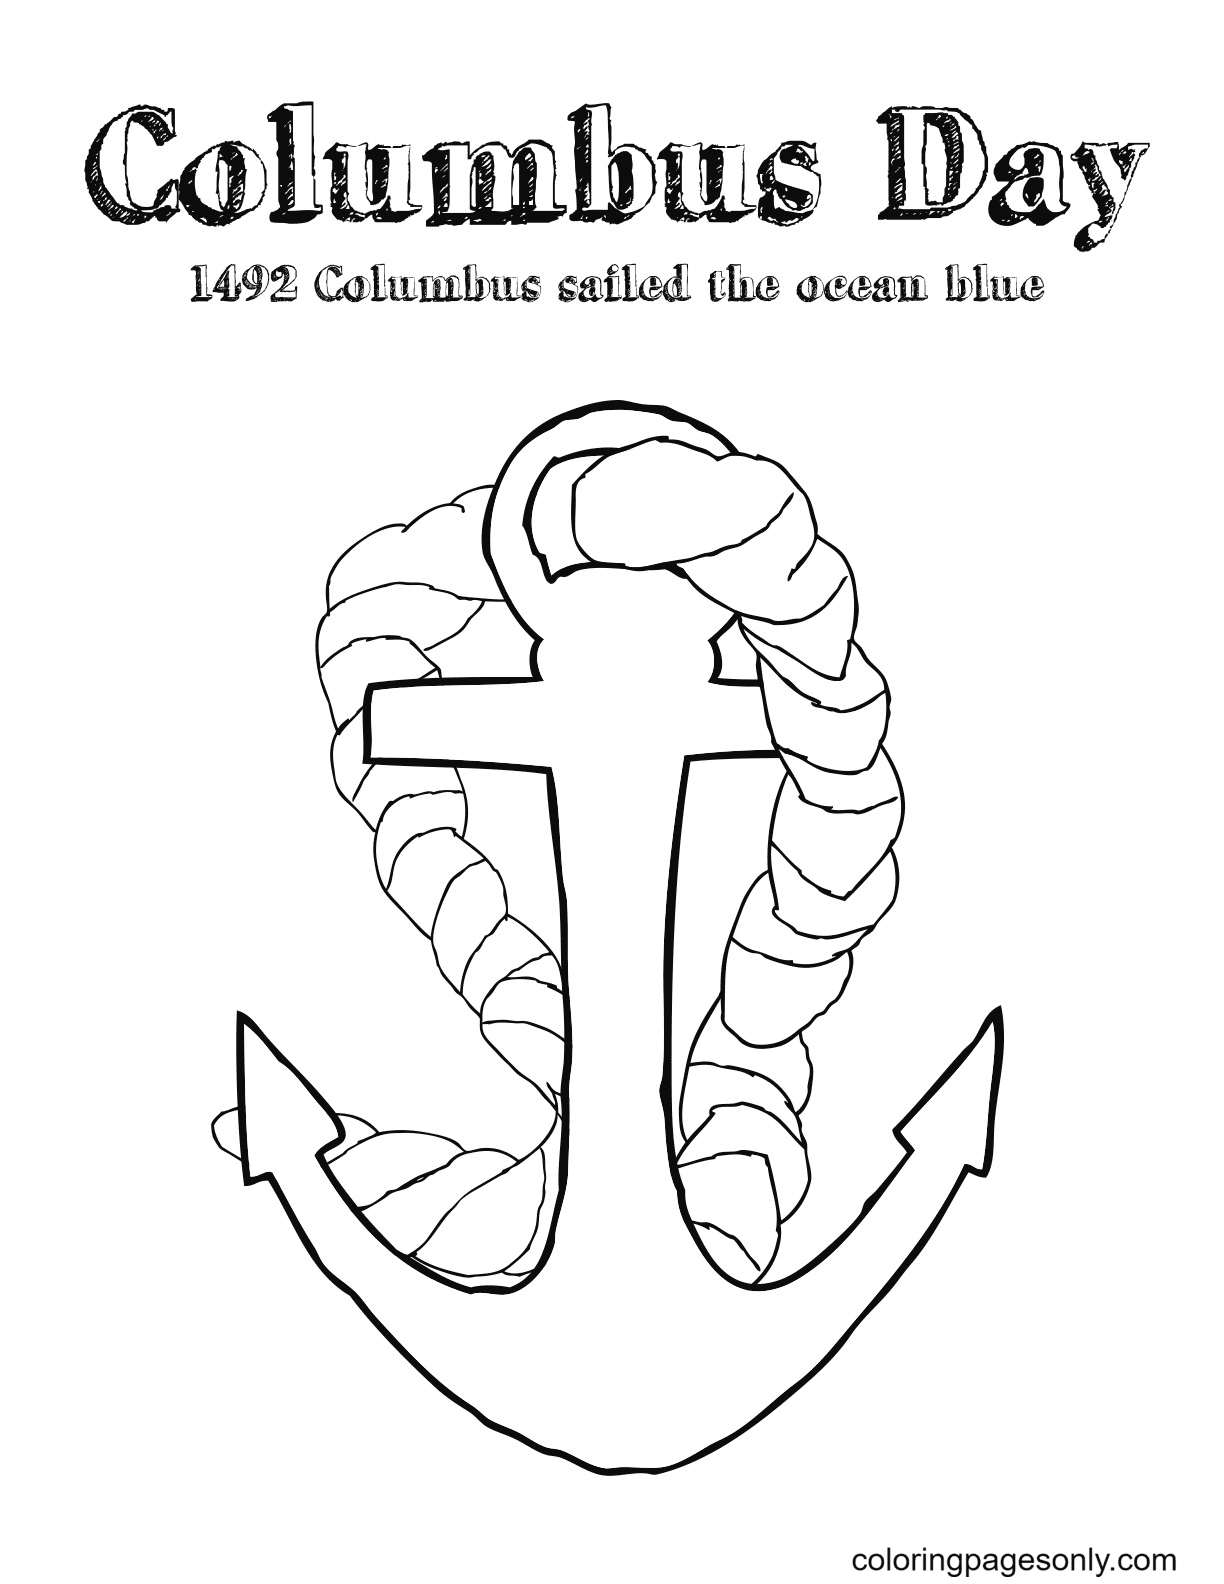 يوم كولومبوس 1492 مجاني من يوم كولومبوس